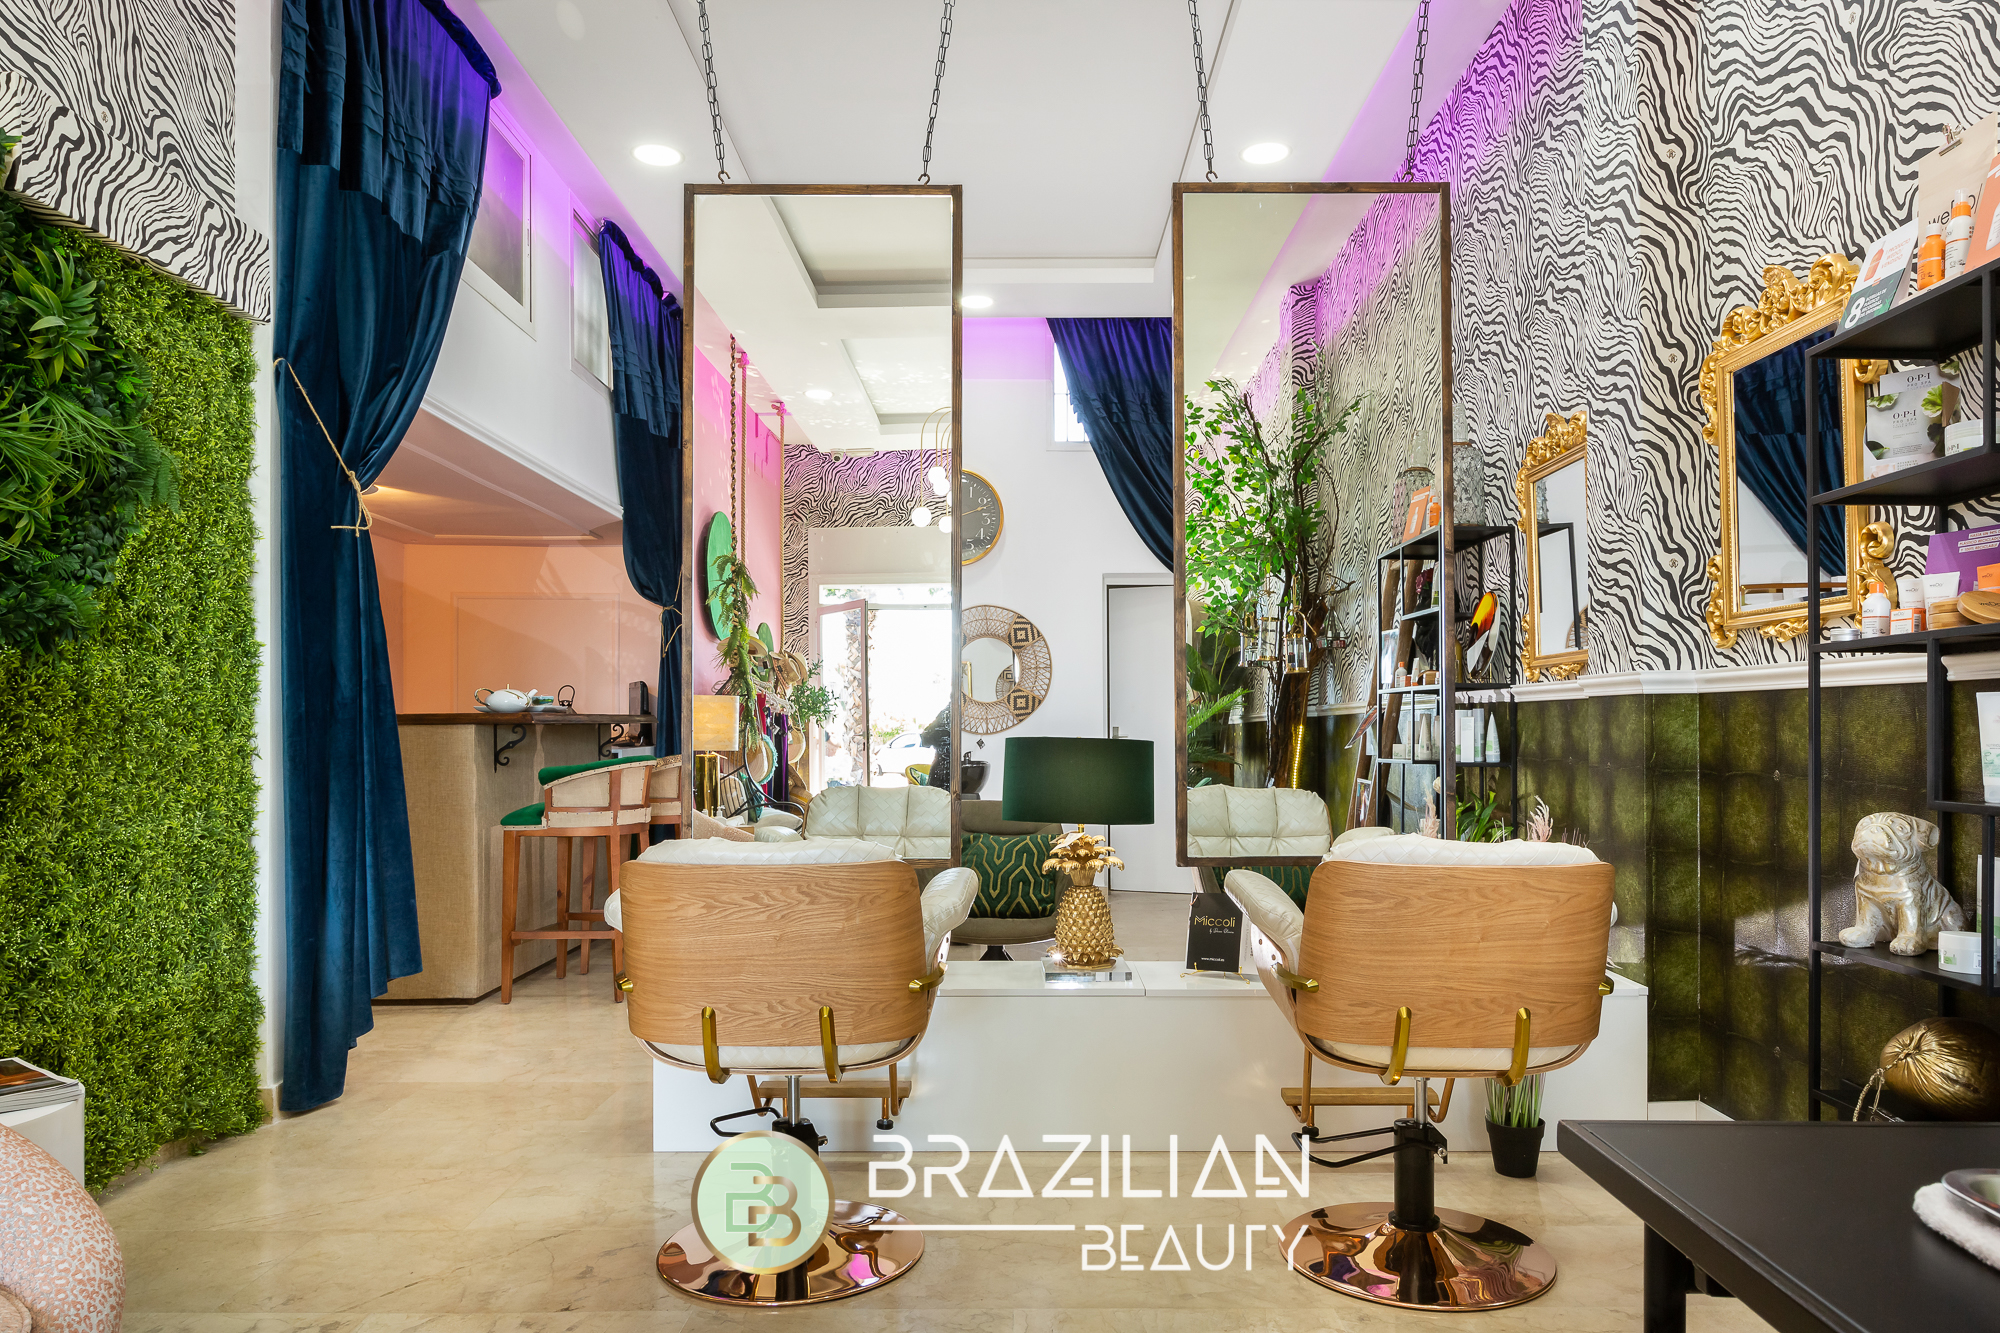 Brazilian Beauty Marbella - Commercial Design by Miccoli